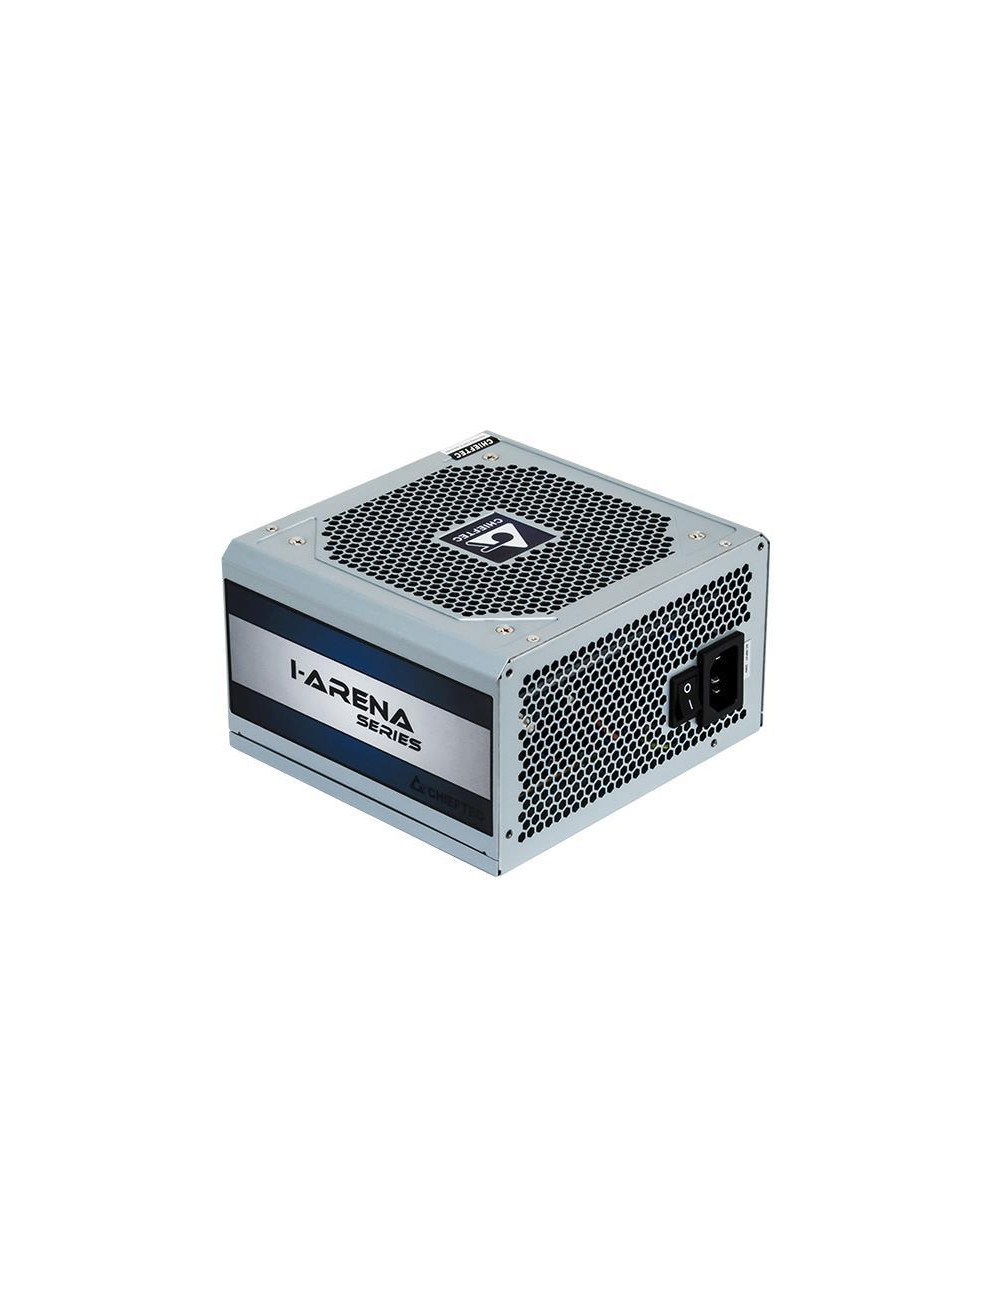 CASE PSU ATX 600W/GPC-600S CHIEFTEC